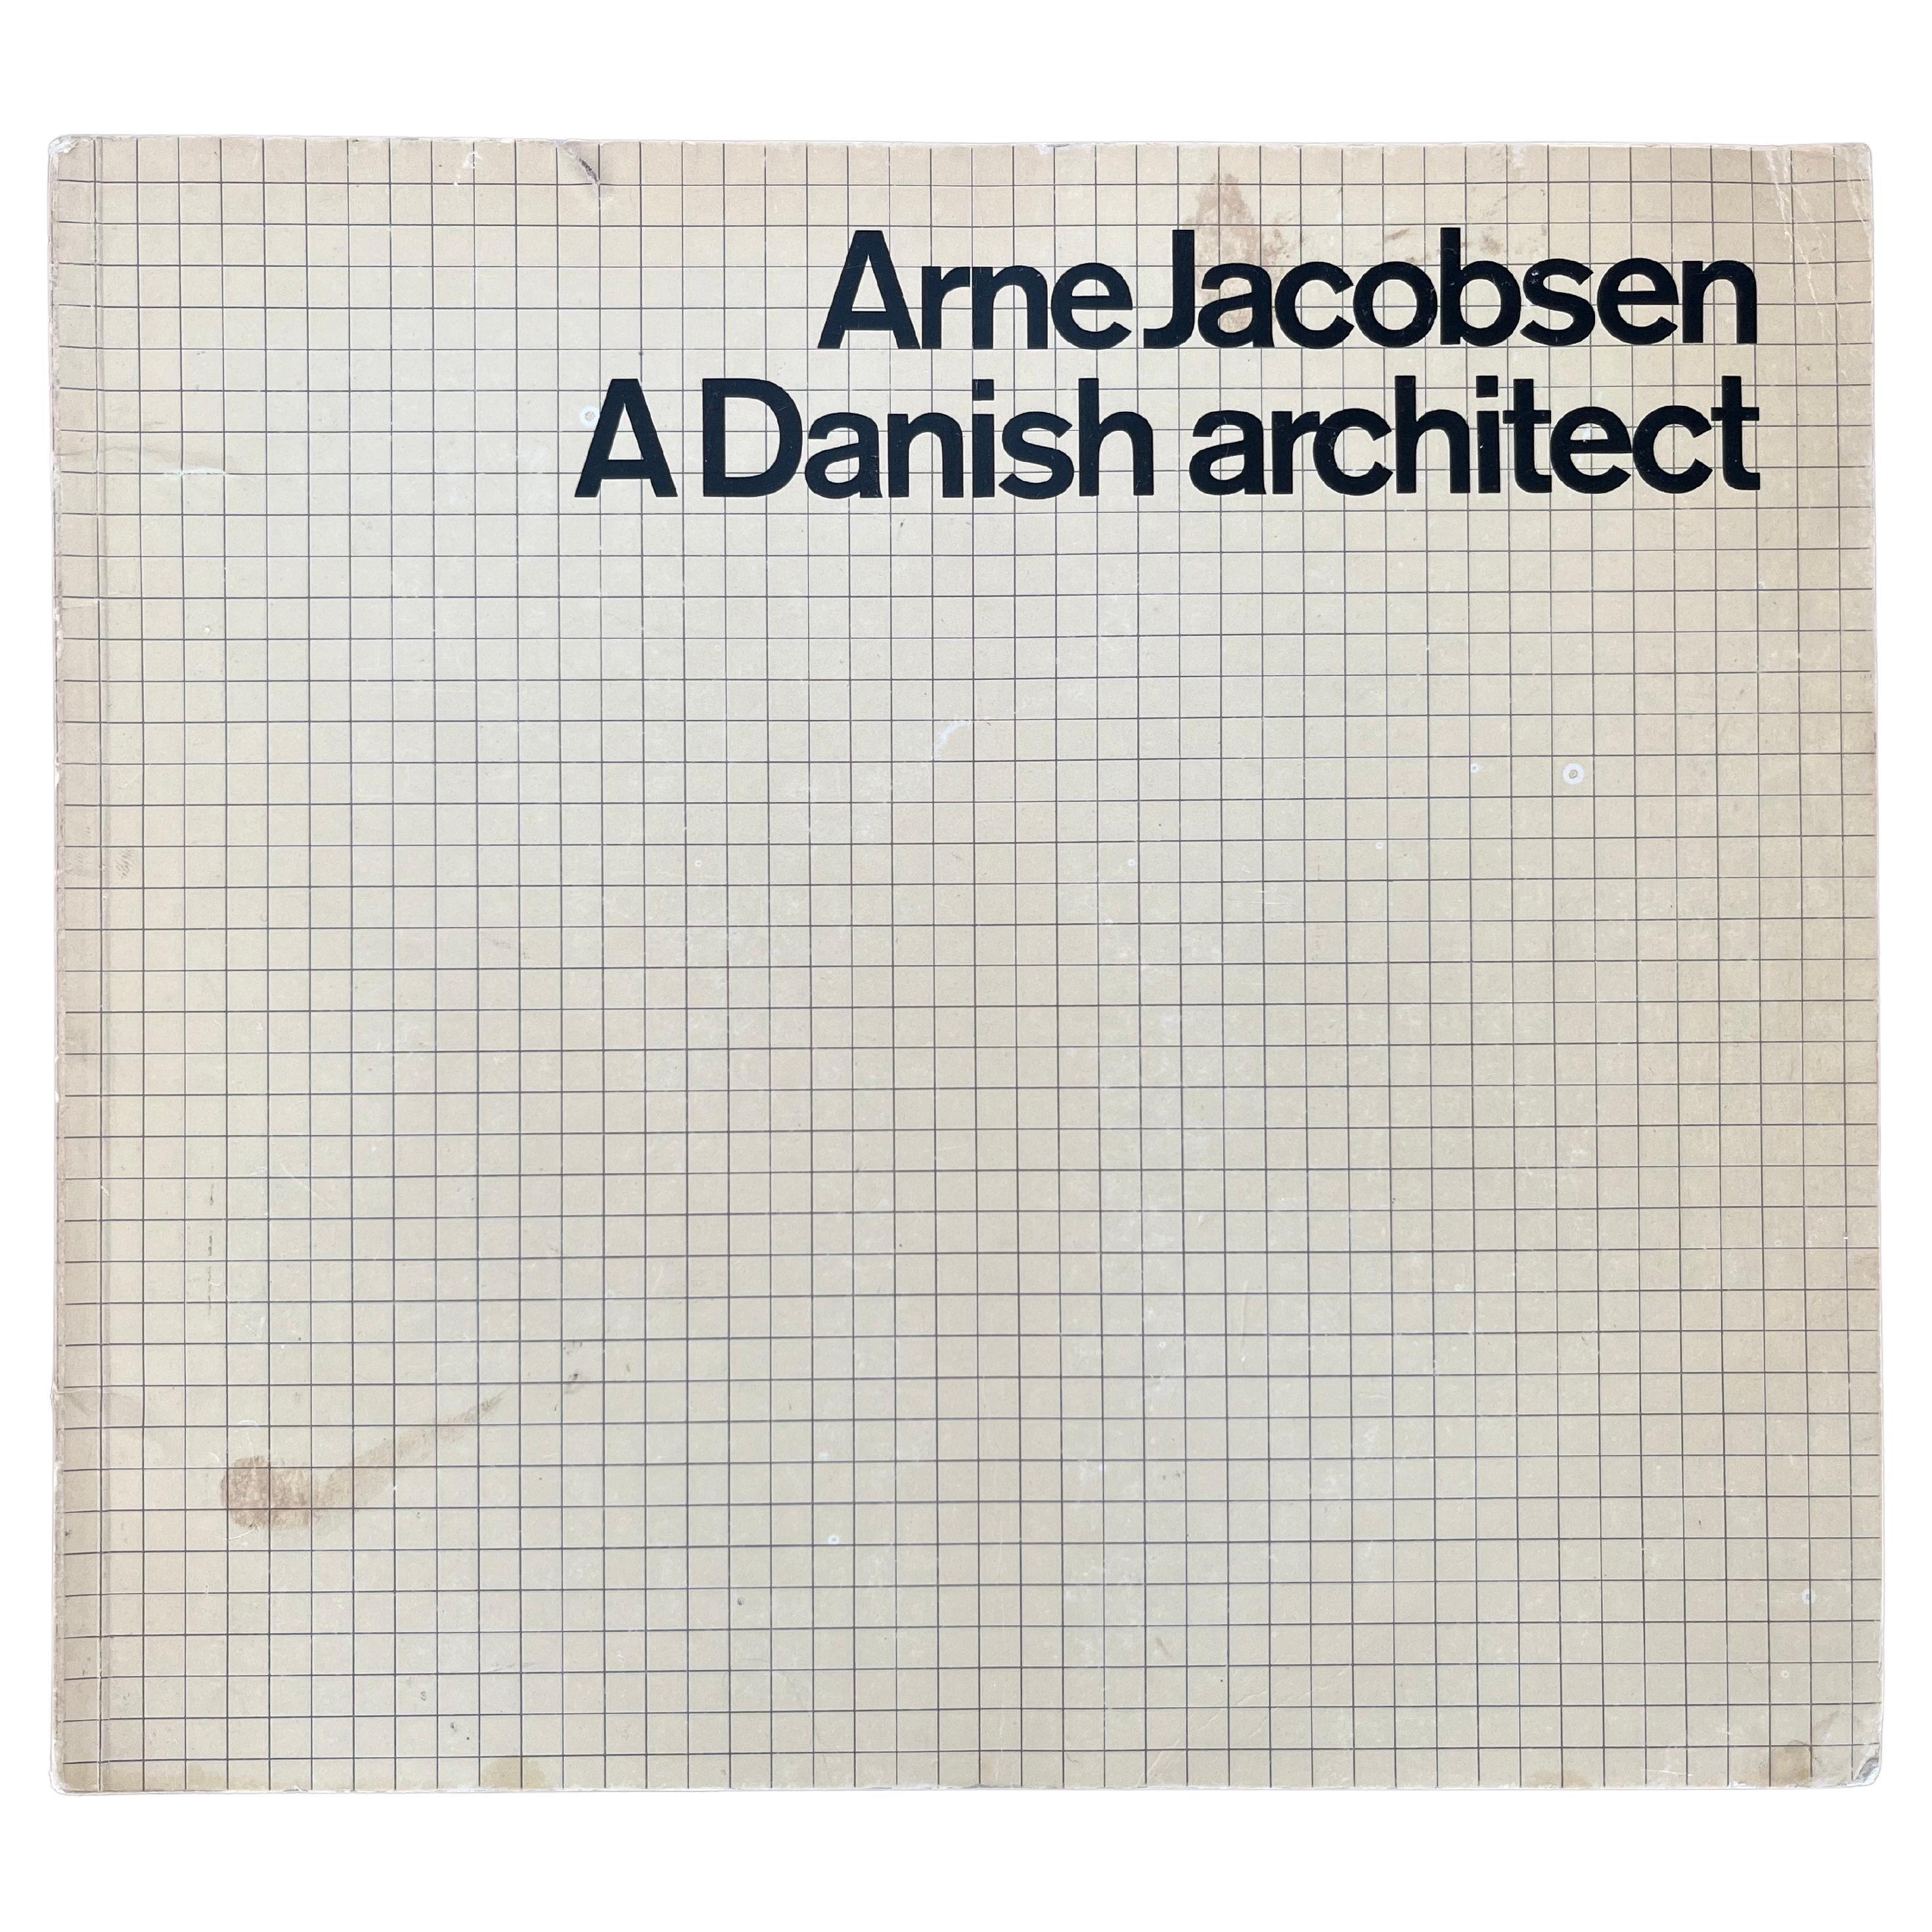 Arne Jacobsen, dänischer Architekt, 1972